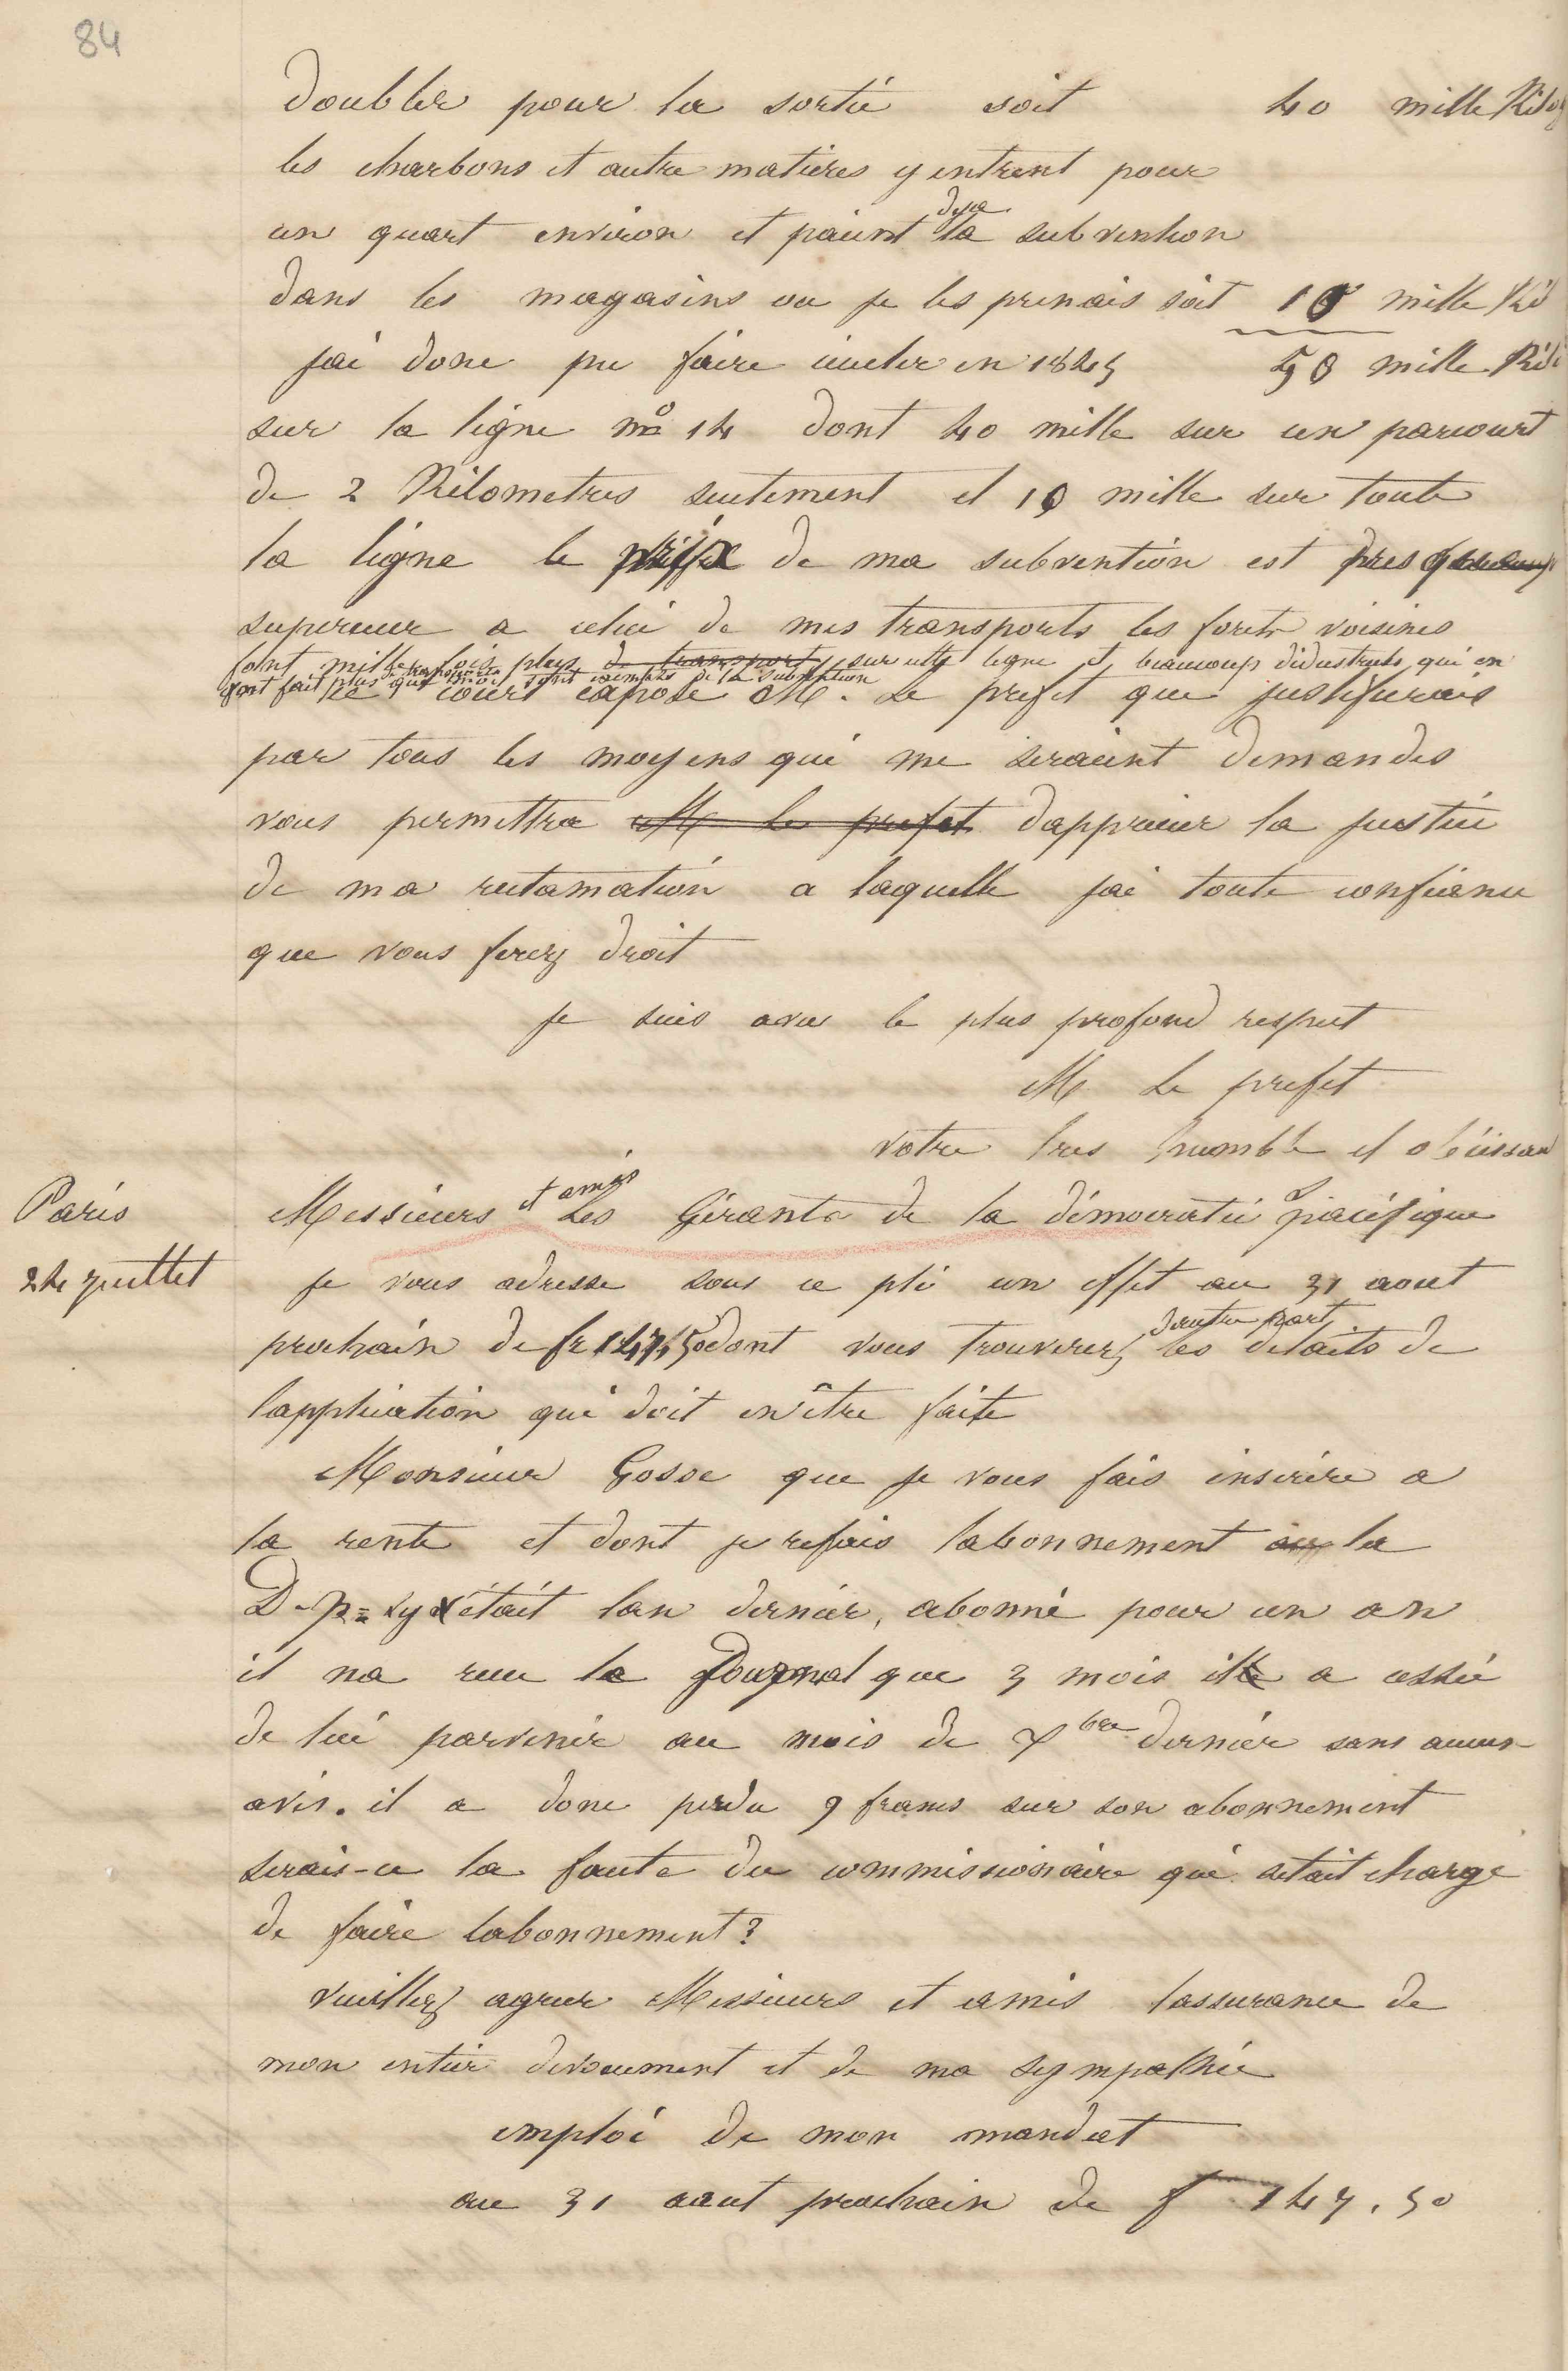 Jean-Baptiste André Godin à Guillaume Crèvecœur, 22 juillet 1847